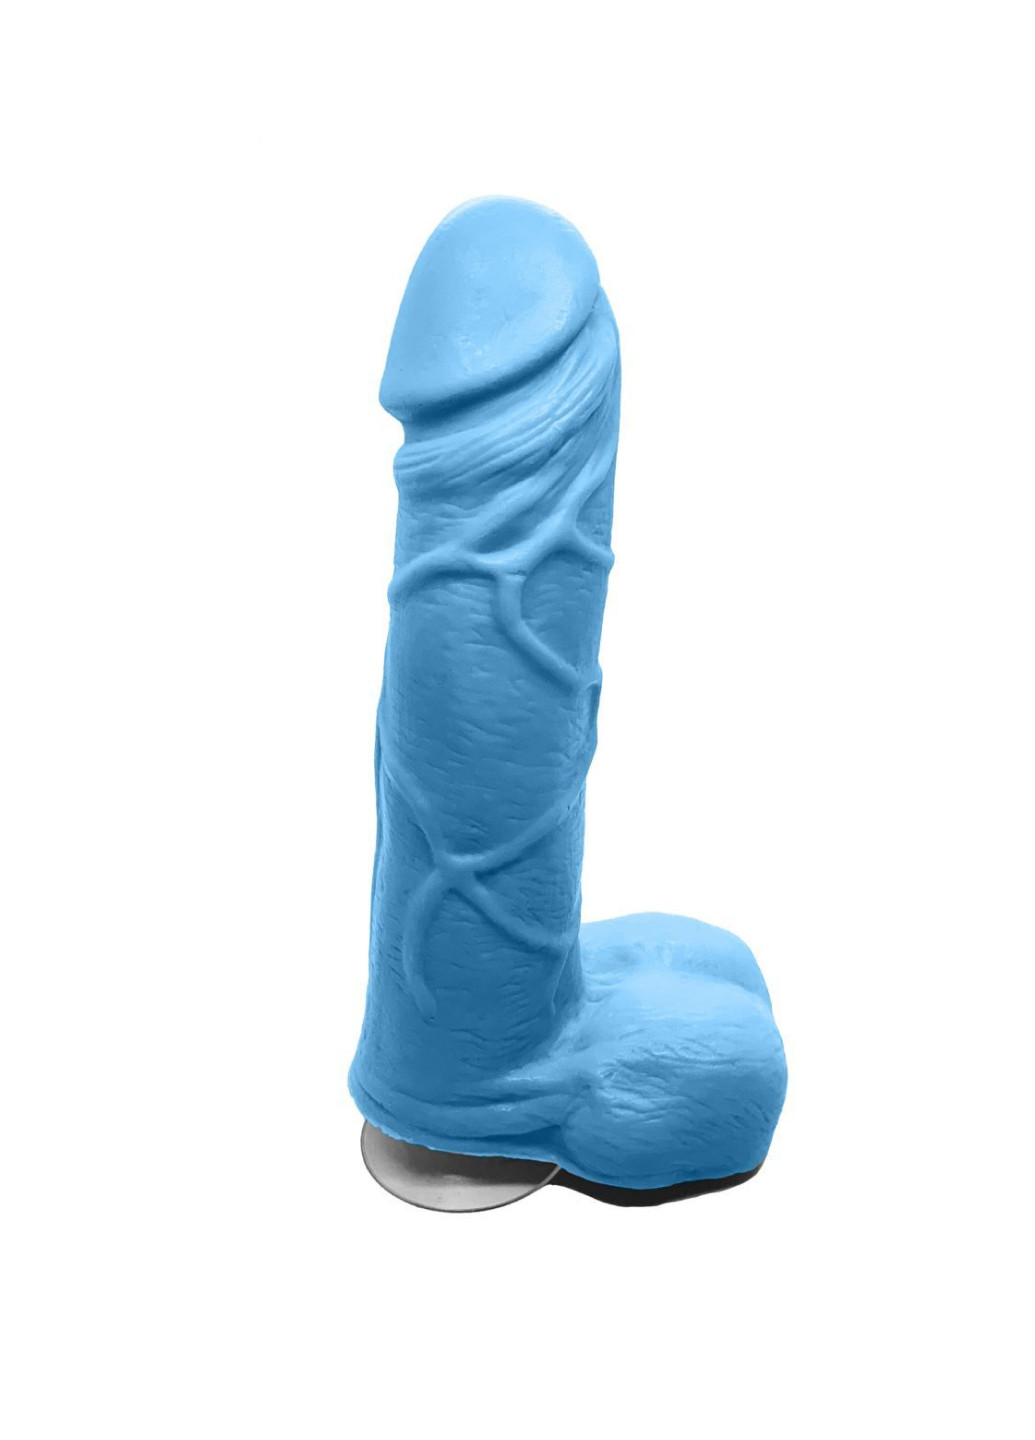 Крафтовое мыло-член с присоской Blue size M натуральное Чистый Кайф (251276960)